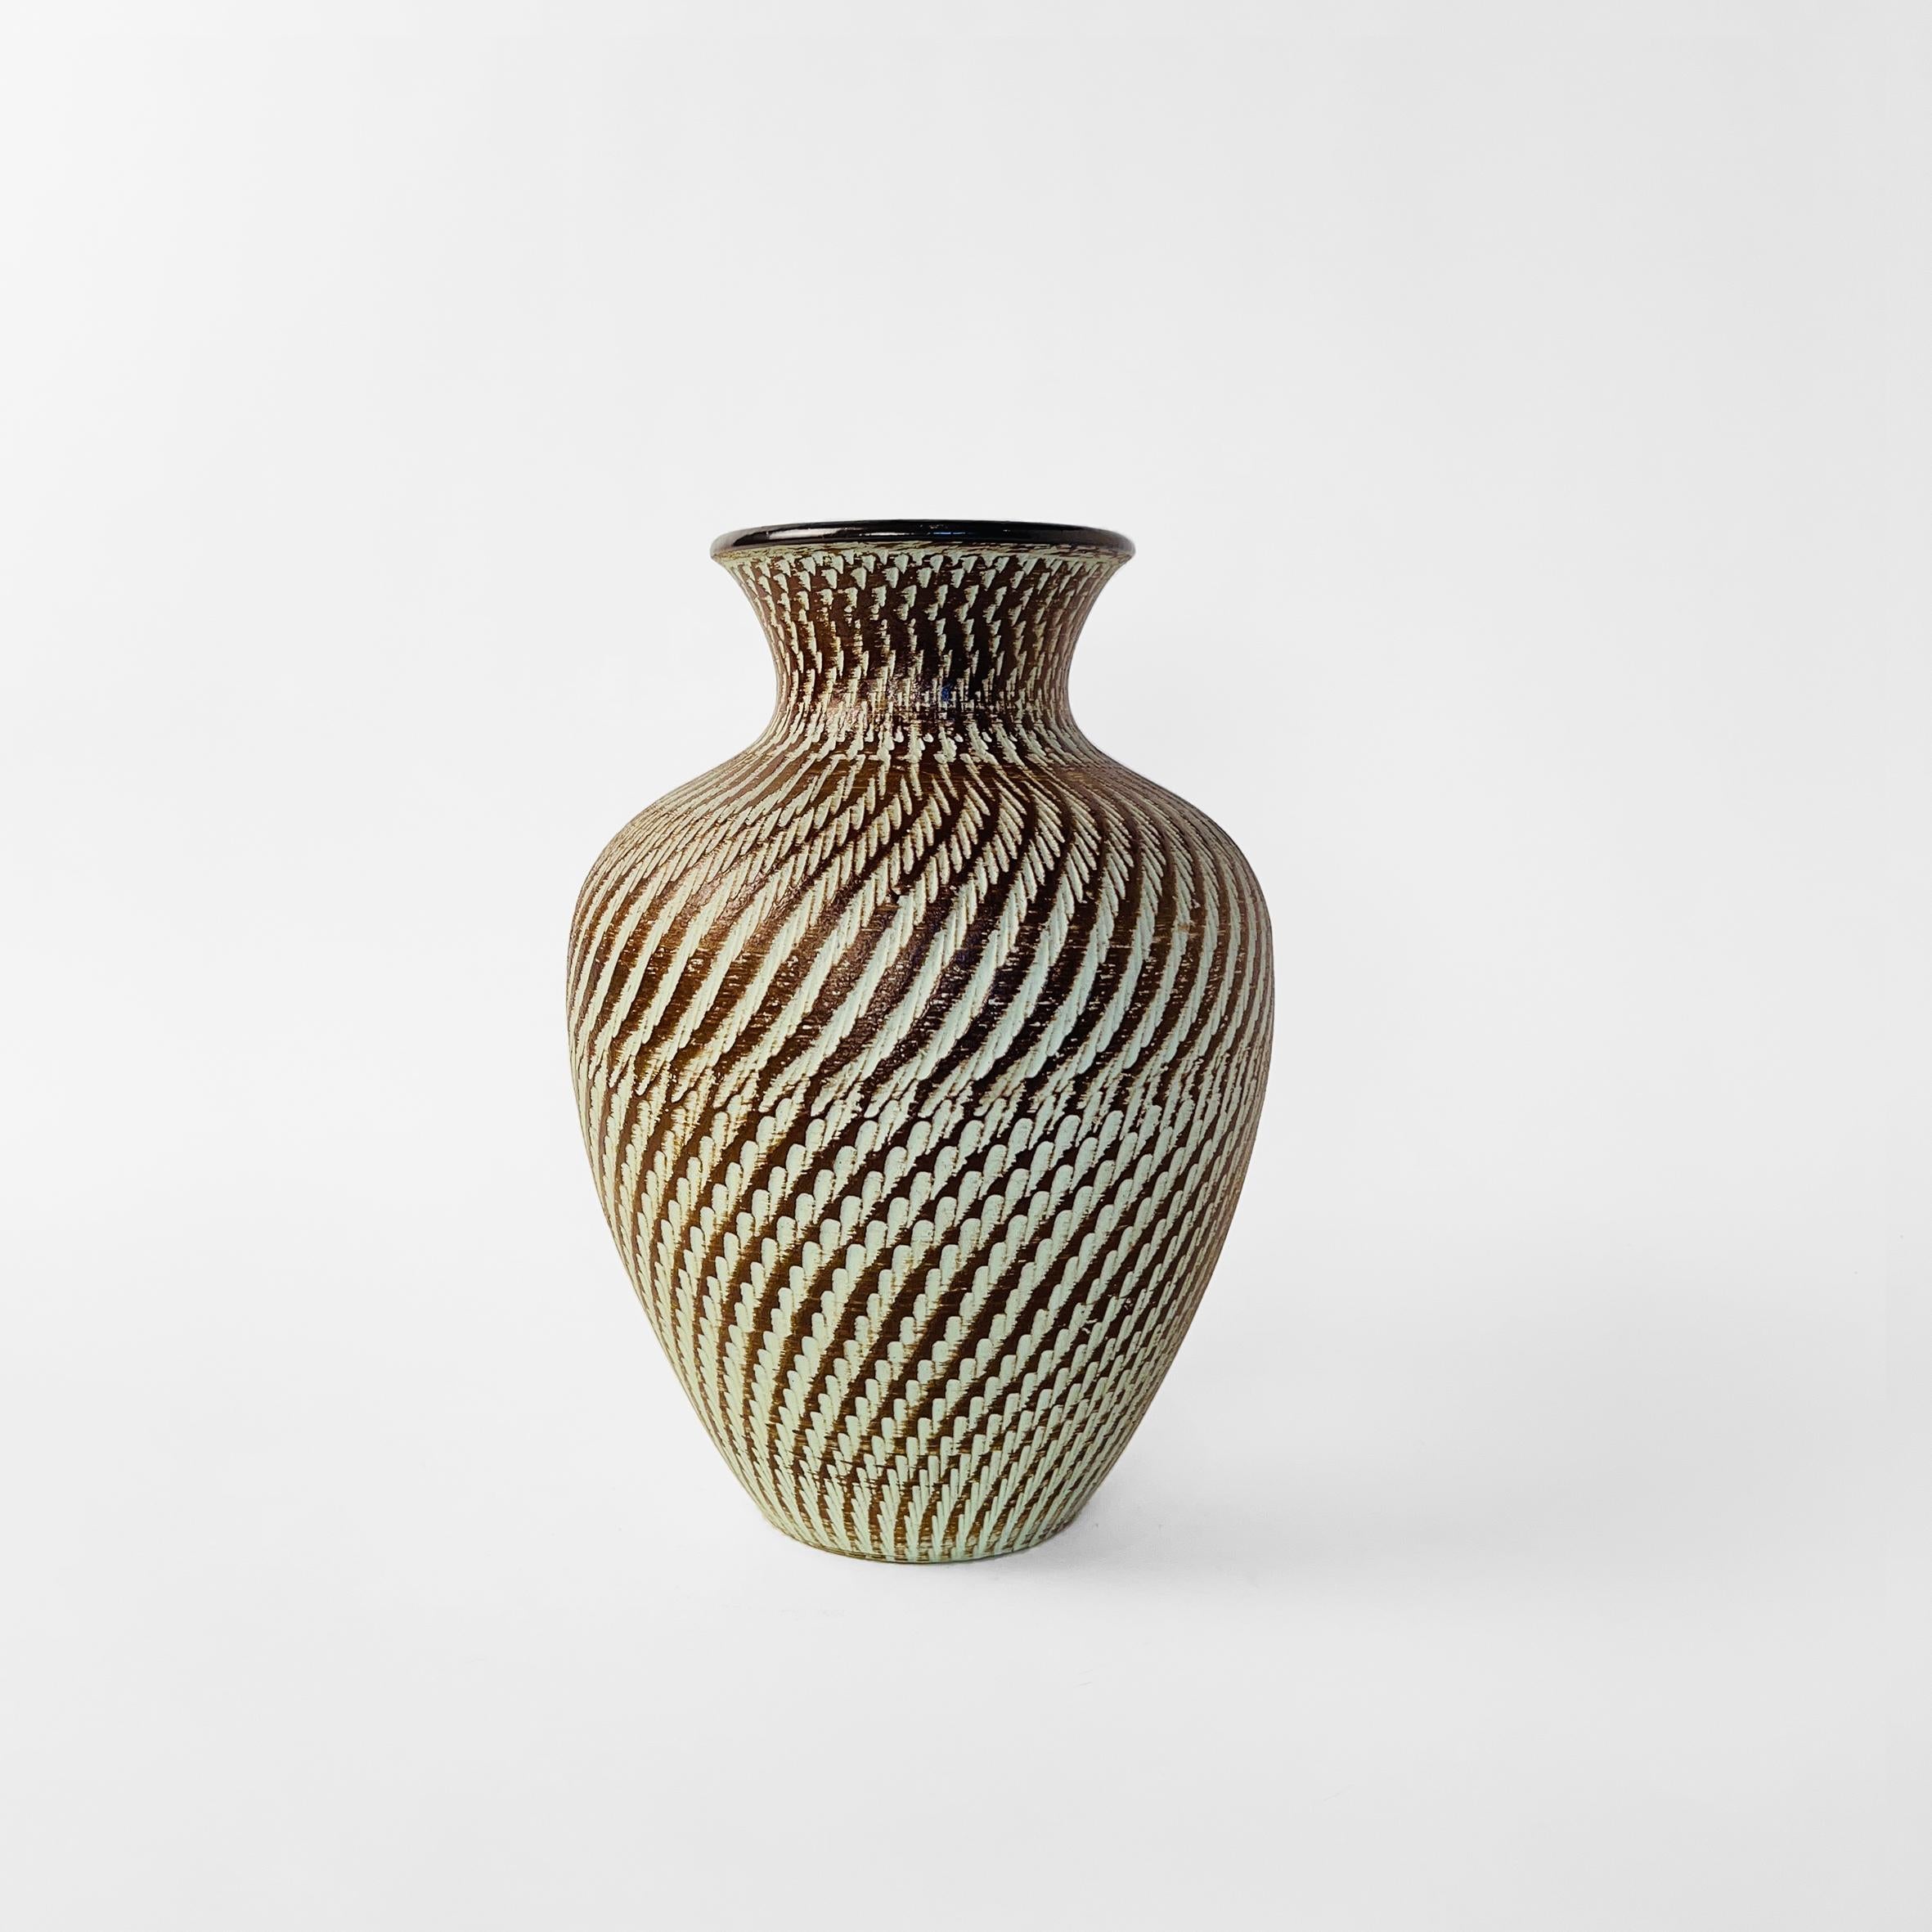 Large ceramic pottery vase by Dümler & Breiden. Germany, 1950s.